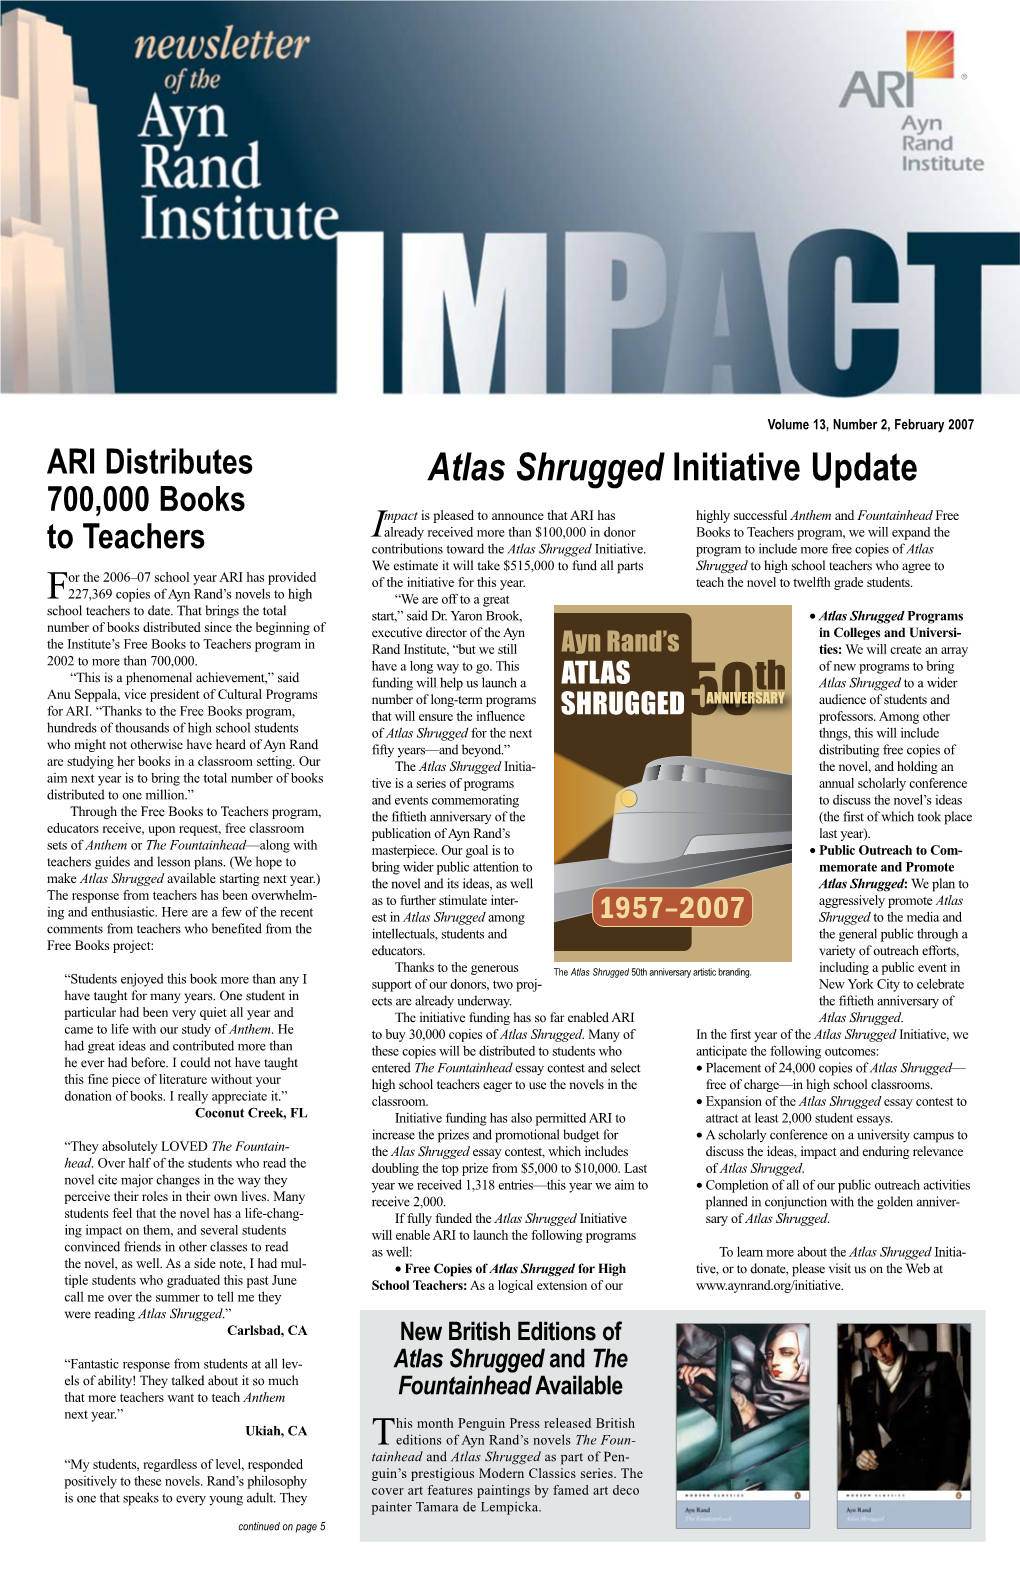 Atlas Shrugged Initiative Update